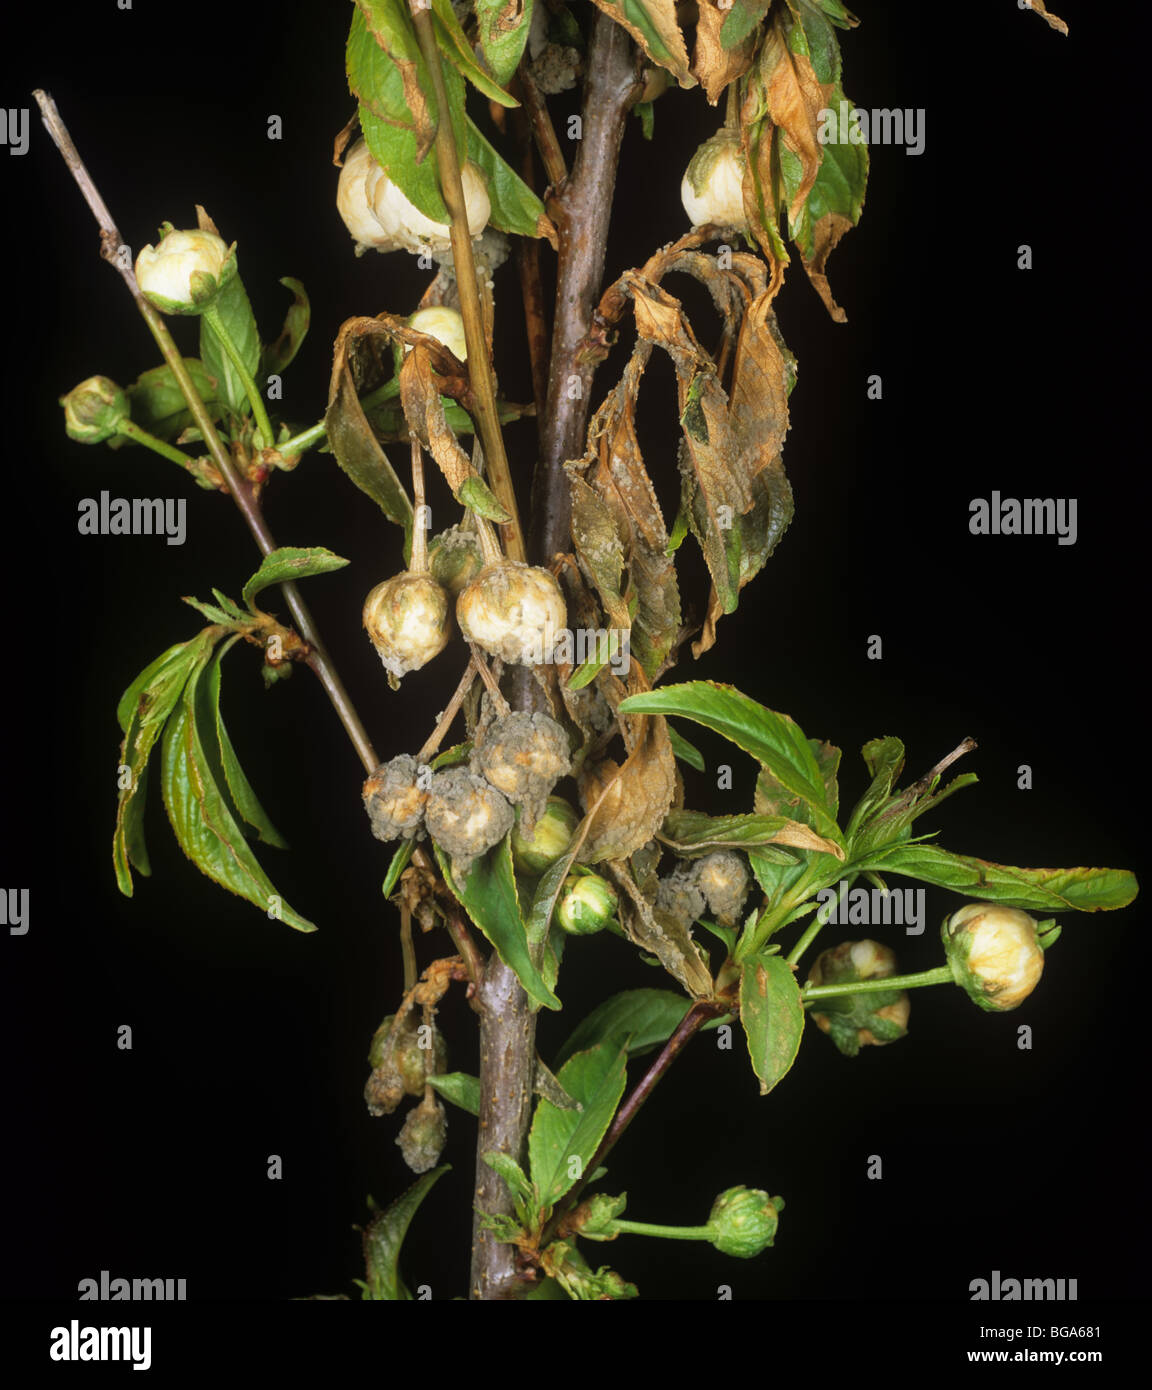 Blossom wilt (Monilinia laxa) diseased flower buds on Prunus glandulosa Stock Photo